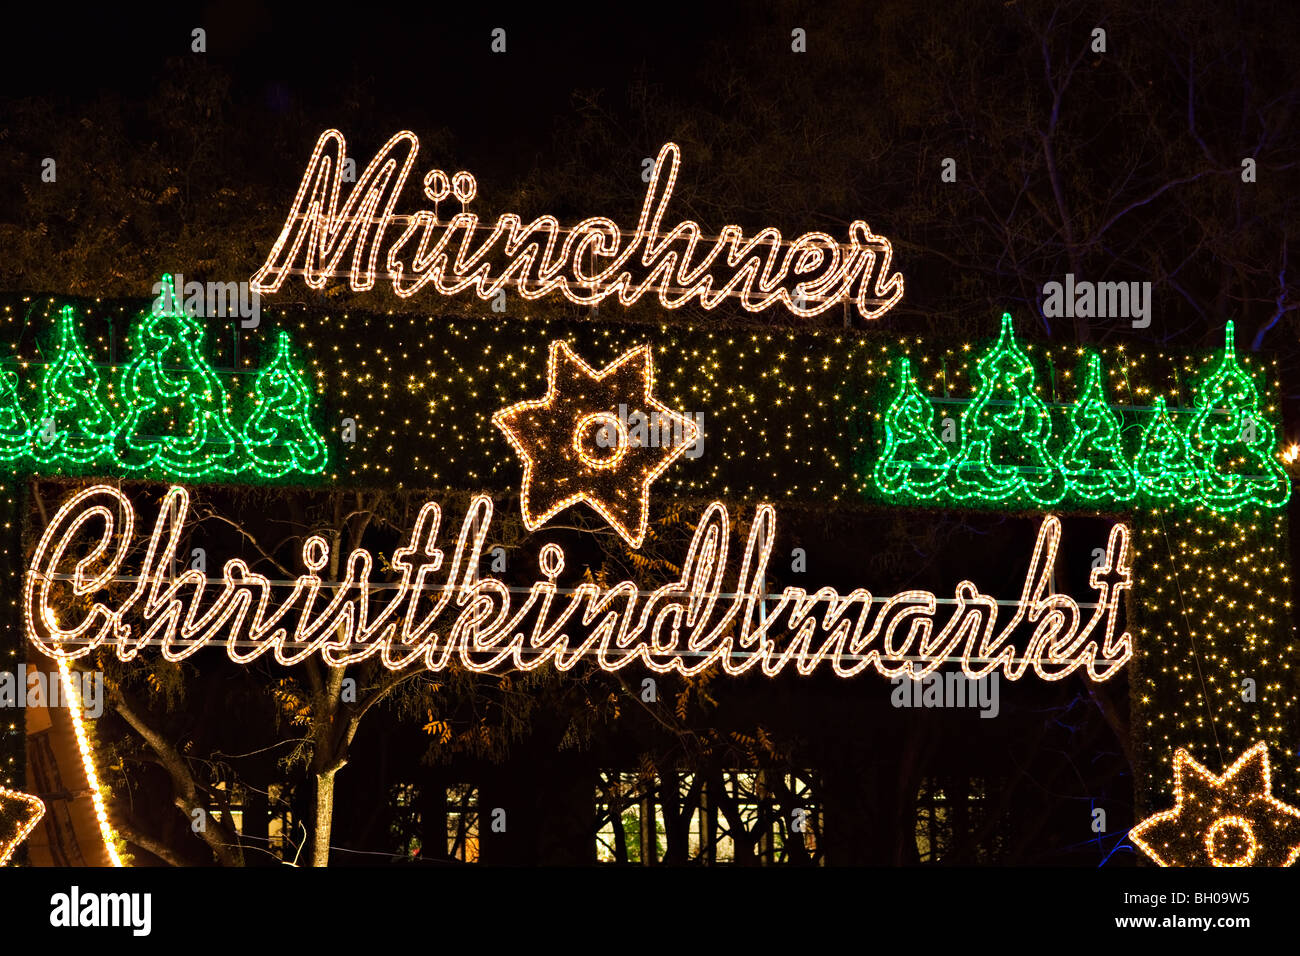 Illuminato segno luminoso per il München Christkindlmarkt (Mercatini di Natale) nella città di München (Monaco di Baviera), in Baviera, Germania, Foto Stock